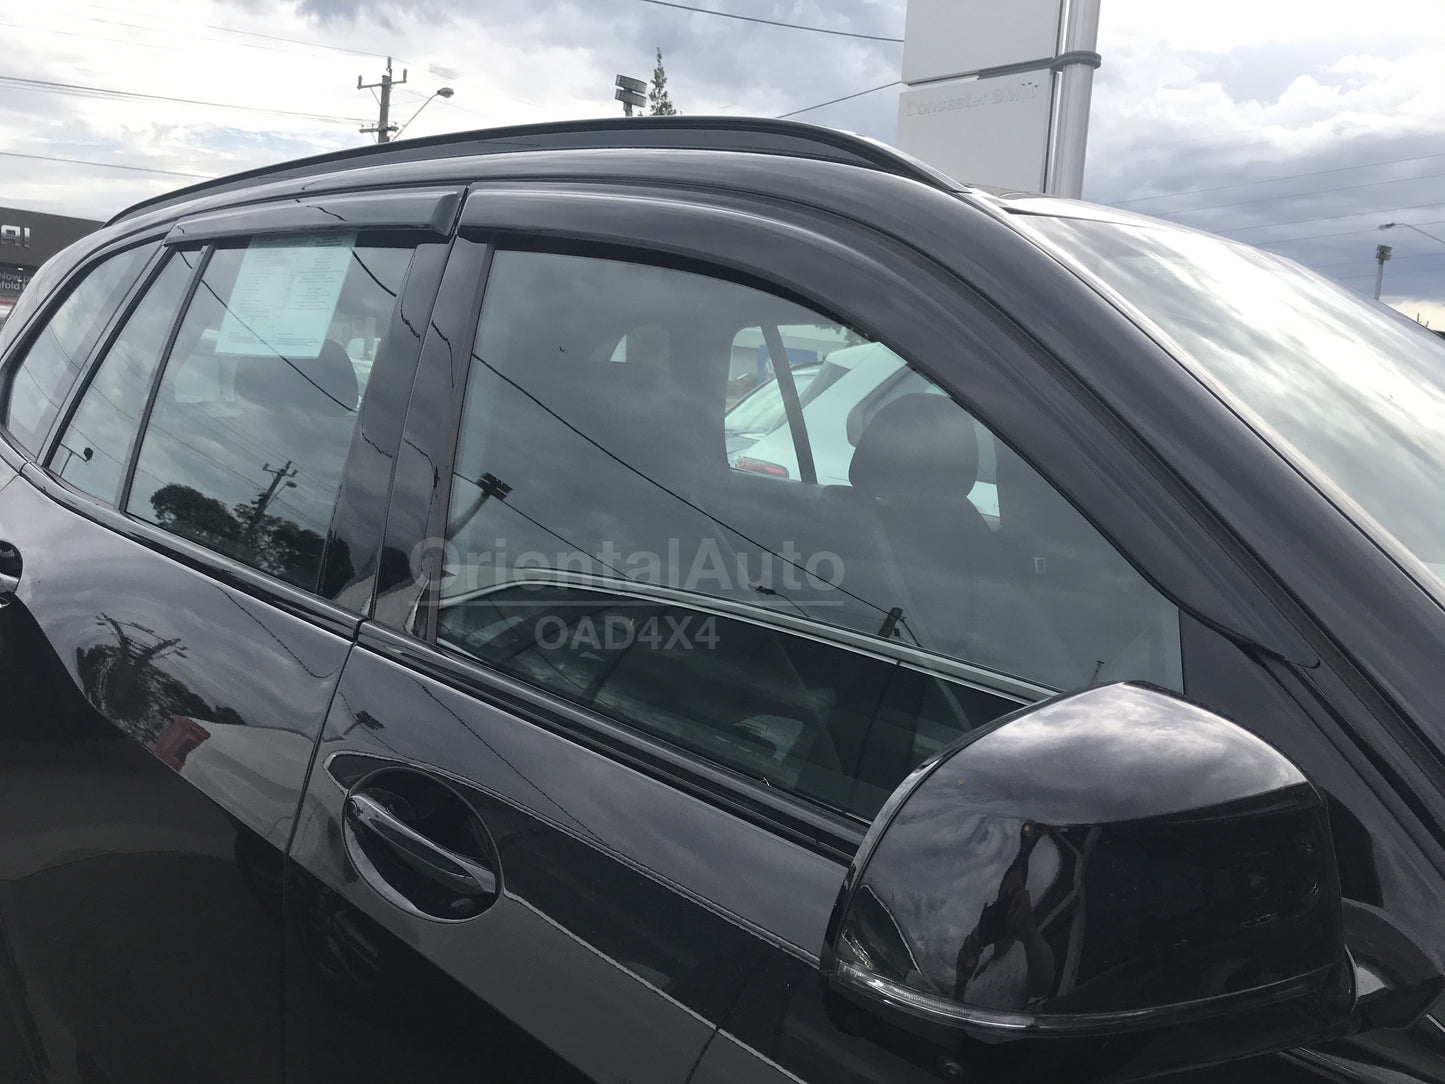 Luxury Weathershields Weather Shields Window Visor For BMW X5 G05 2018+